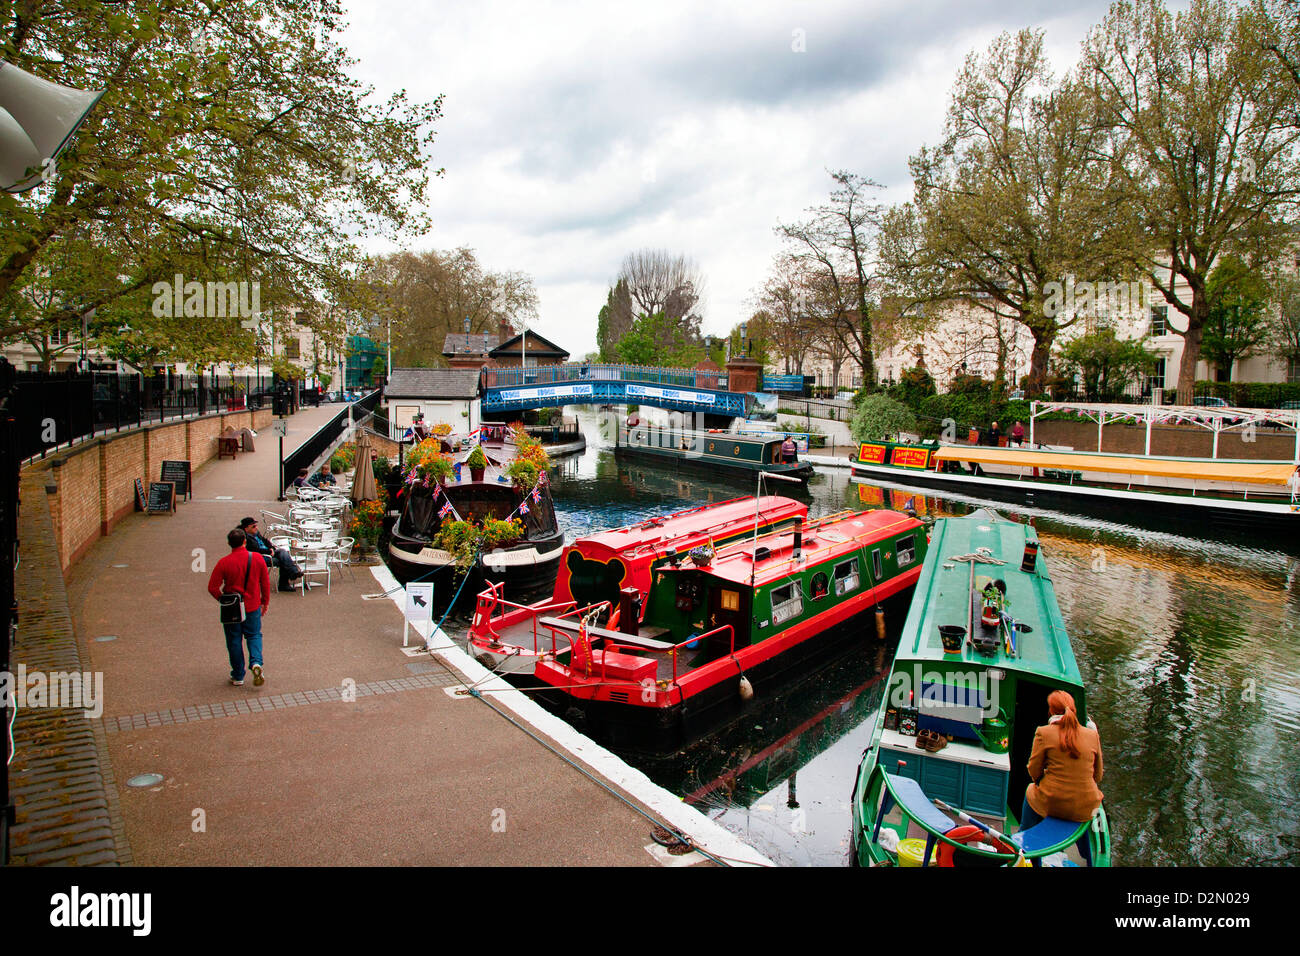 Vue le long du Grand Union Canal, Little Venice, Maida Vale, Londres, Angleterre, Royaume-Uni, Europe Banque D'Images